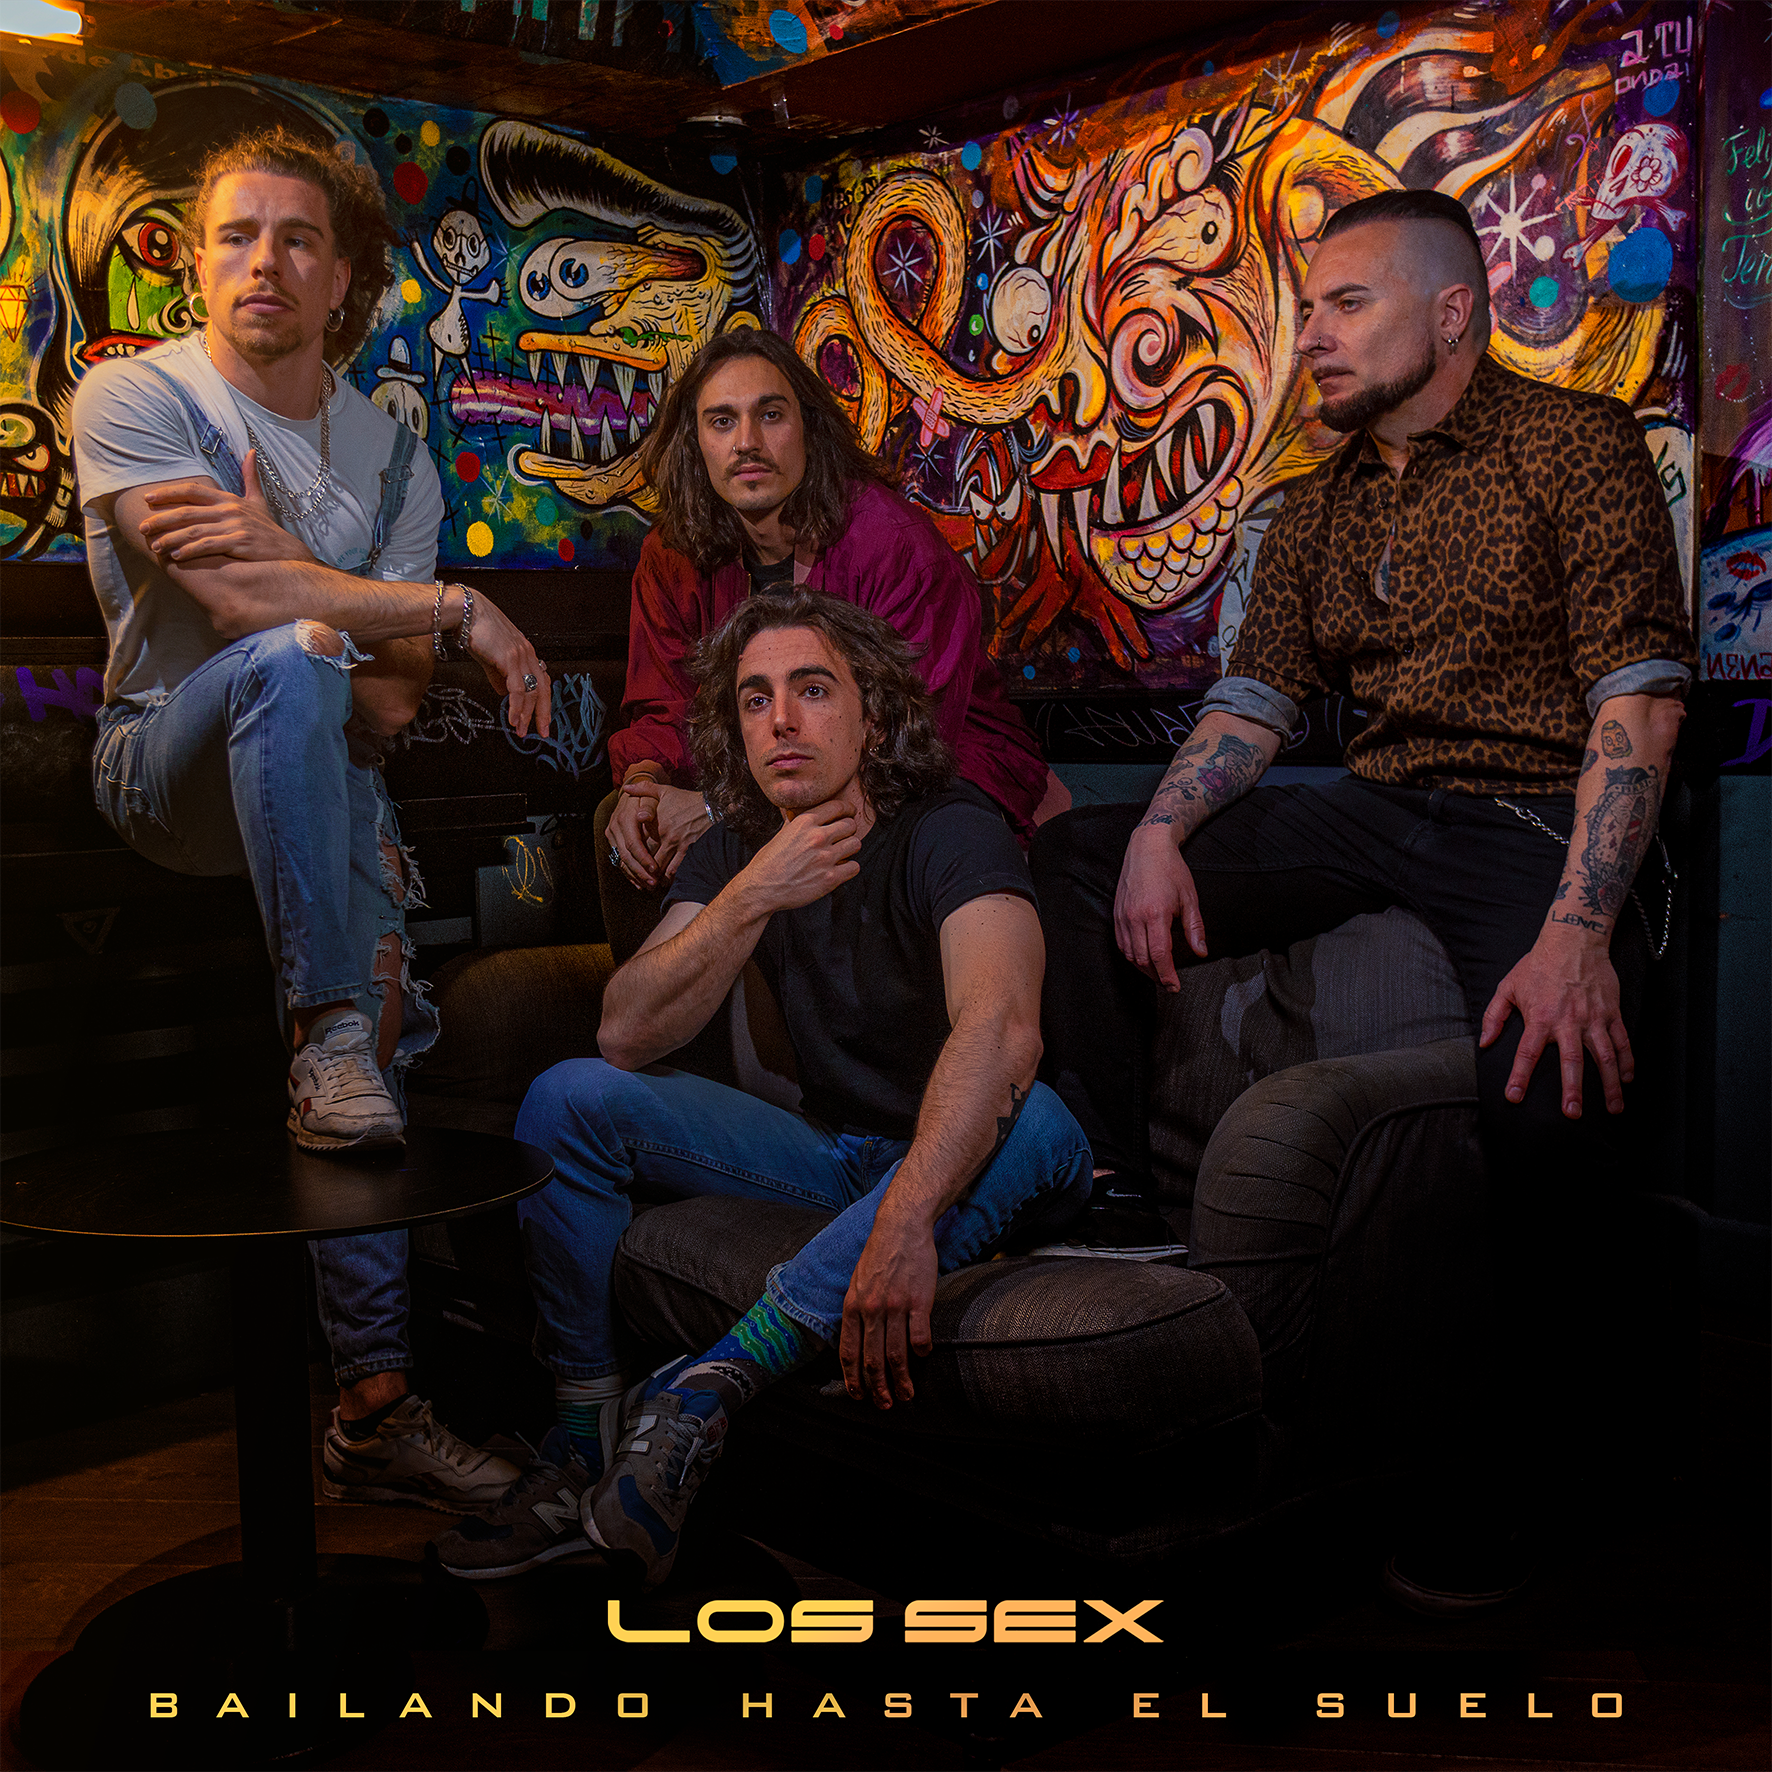 Los Sex estrenan el single “Bailando Hasta El Suelo”